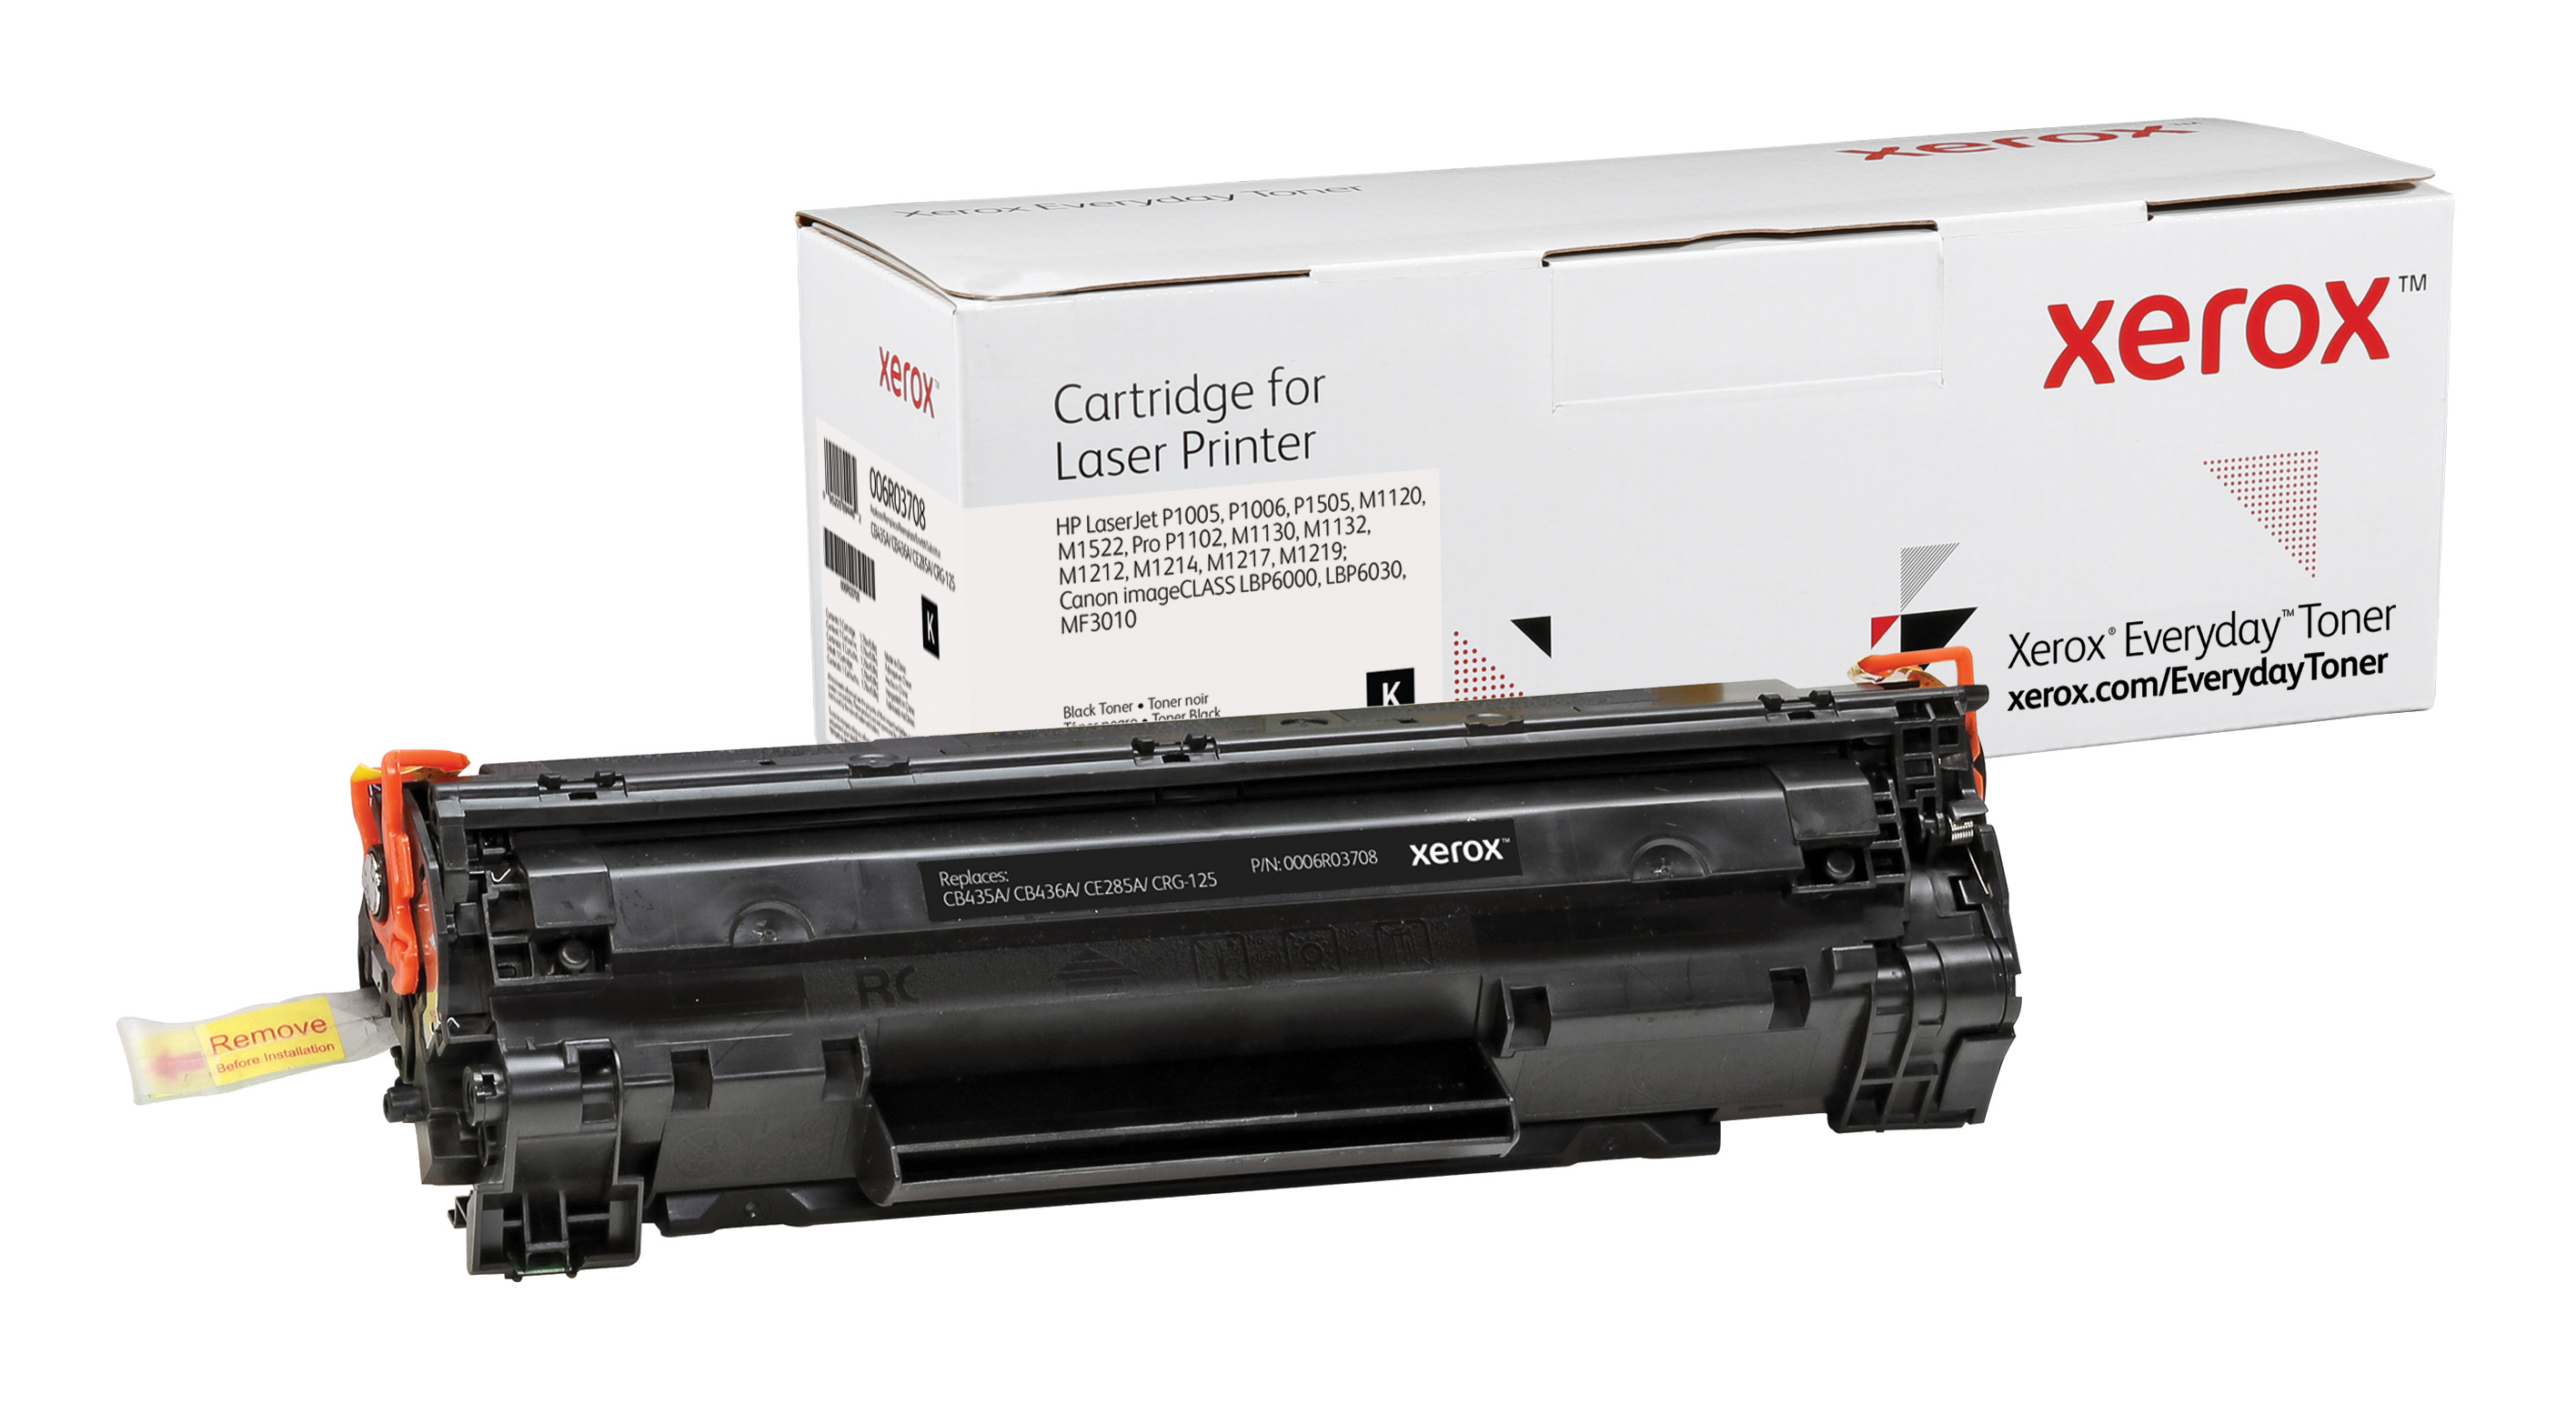 Xerox Everyday Zwart Toner vervangt de HP 35A/ 36A/ 85A/ (CB435A/ CB436A/ CE285A/ CRG-125)